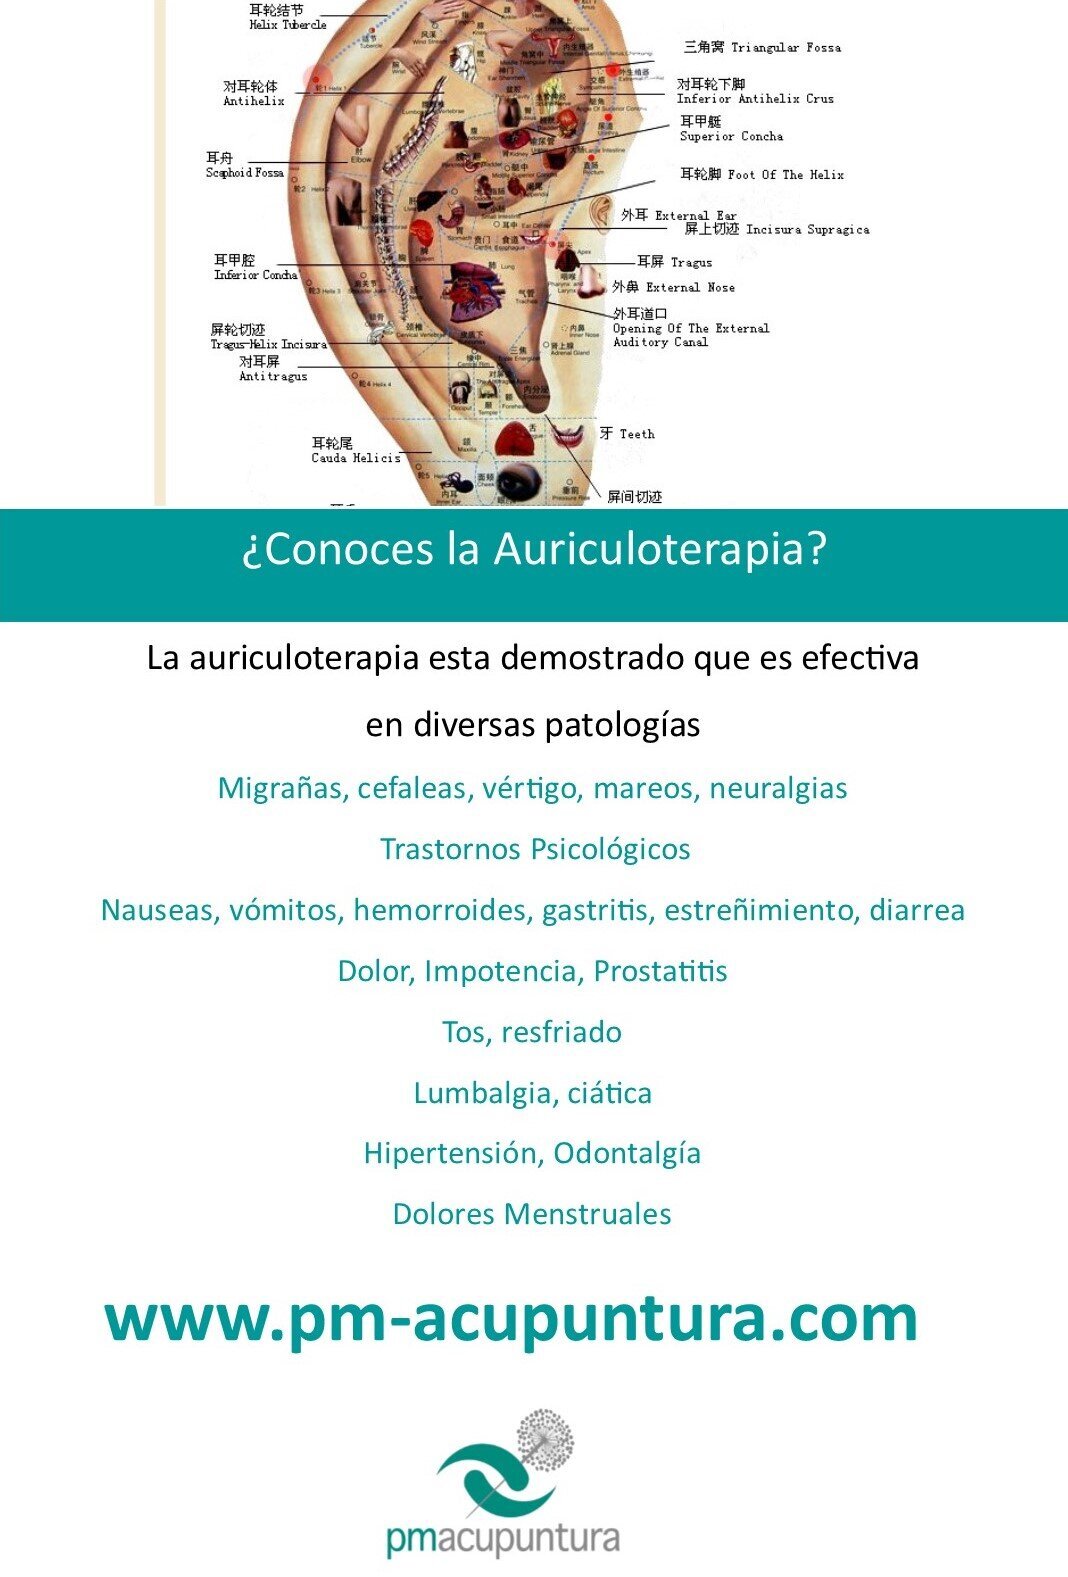 Images pm-acupuntura